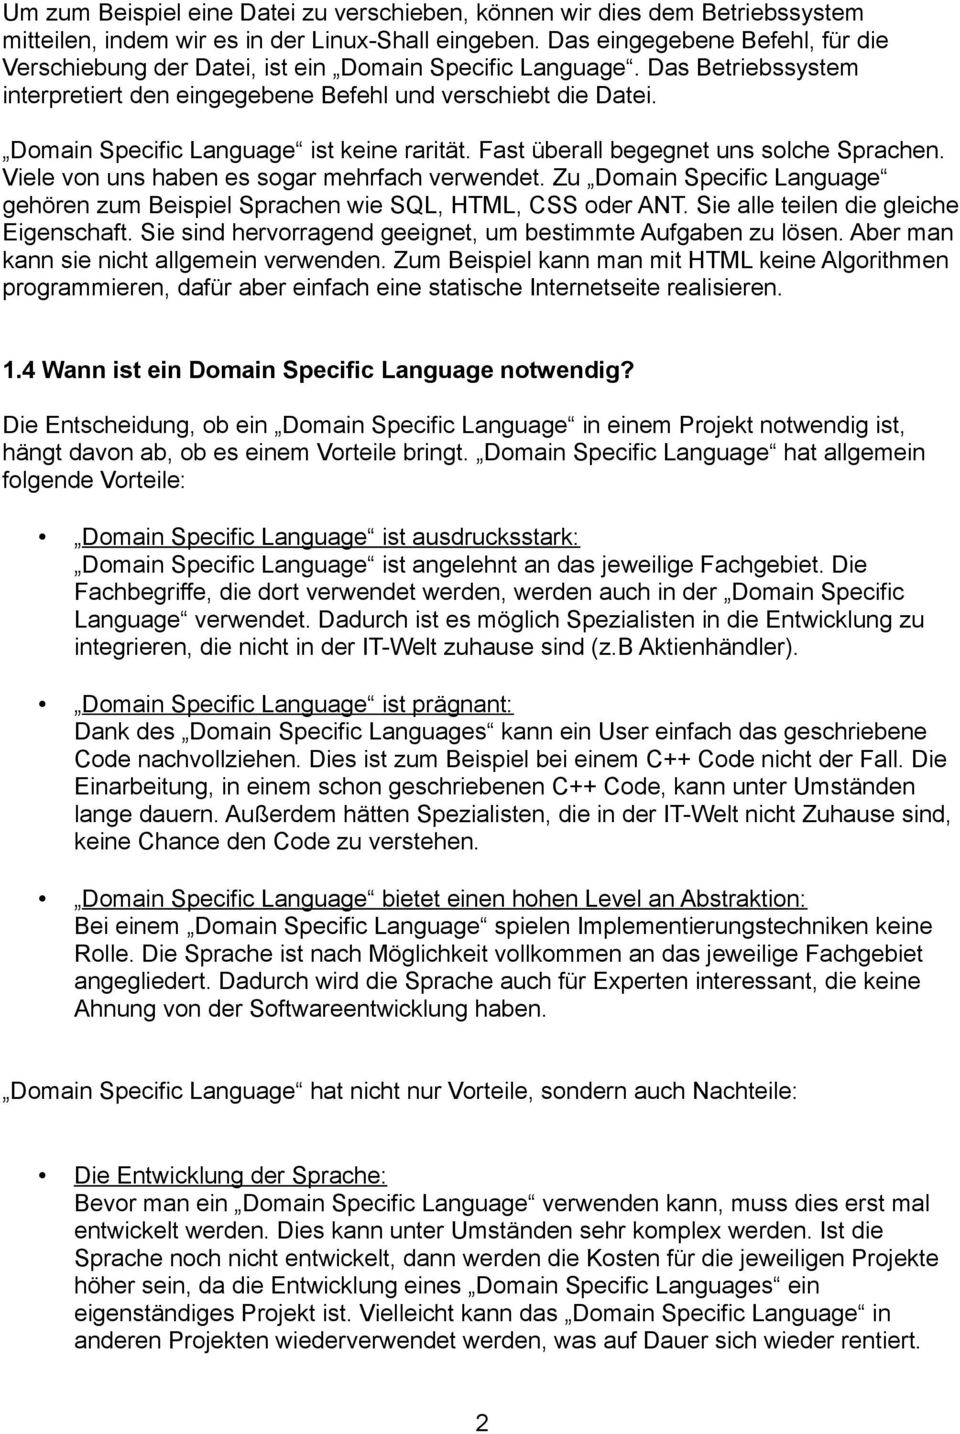 Domain Specific Language ist keine rarität. Fast überall begegnet uns solche Sprachen. Viele von uns haben es sogar mehrfach verwendet.